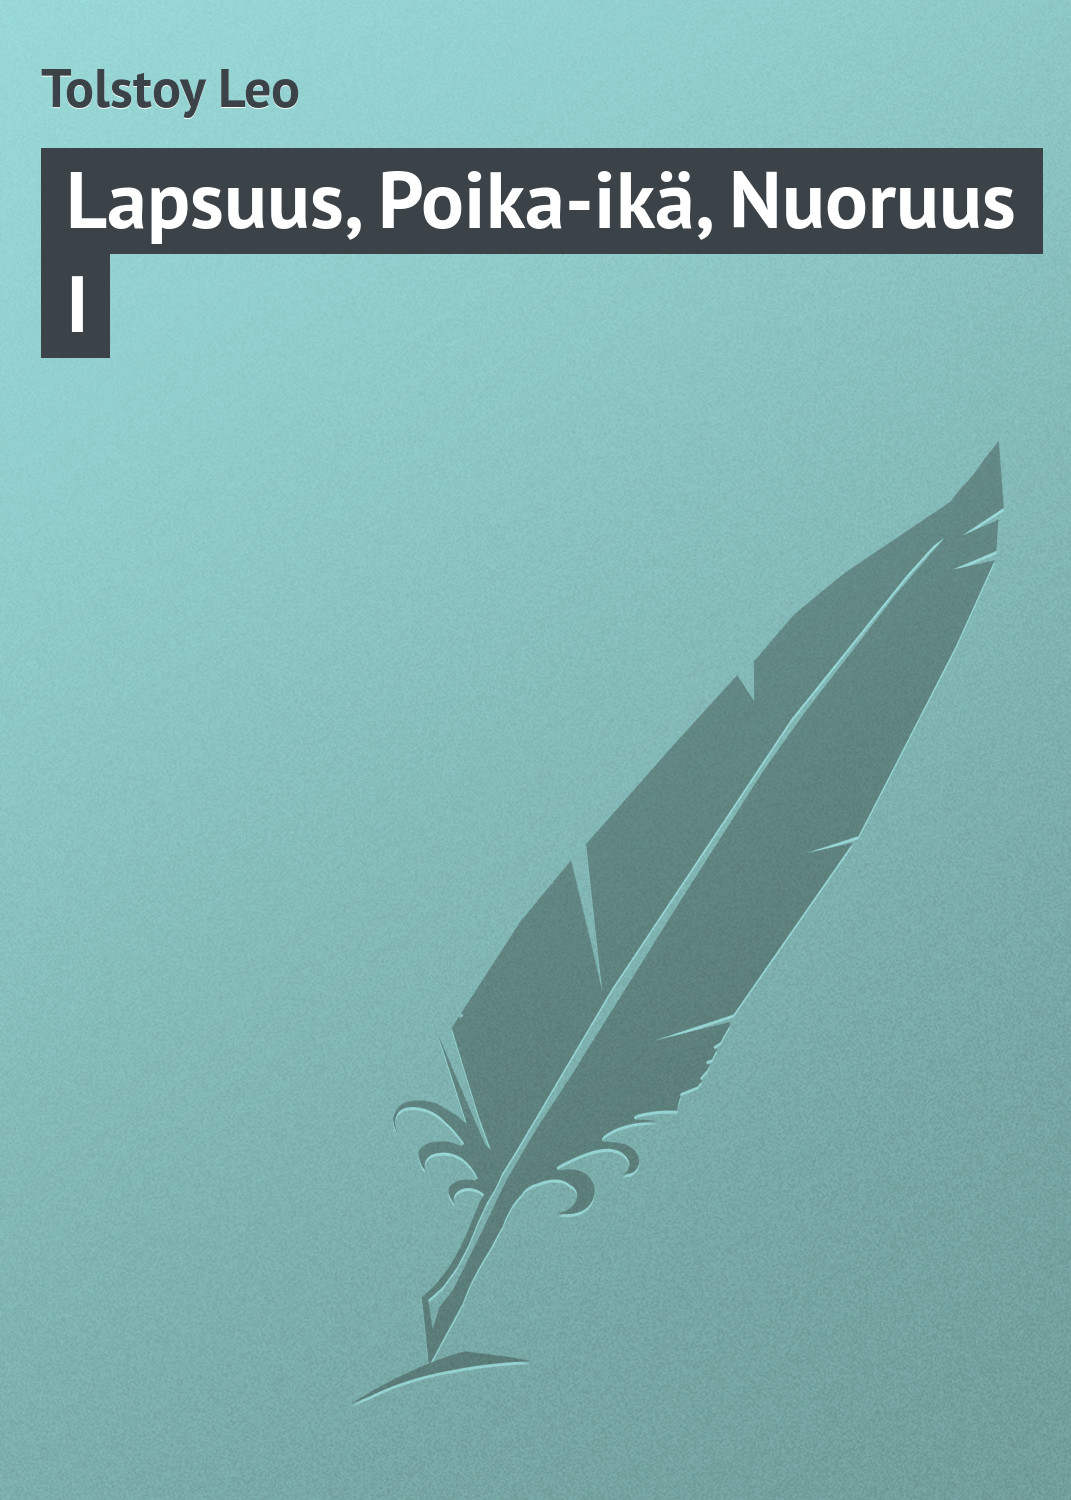 Книга Lapsuus, Poika-ikä, Nuoruus I из серии , созданная Leo Tolstoy, может относится к жанру Зарубежная классика. Стоимость электронной книги Lapsuus, Poika-ikä, Nuoruus I с идентификатором 23163147 составляет 5.99 руб.